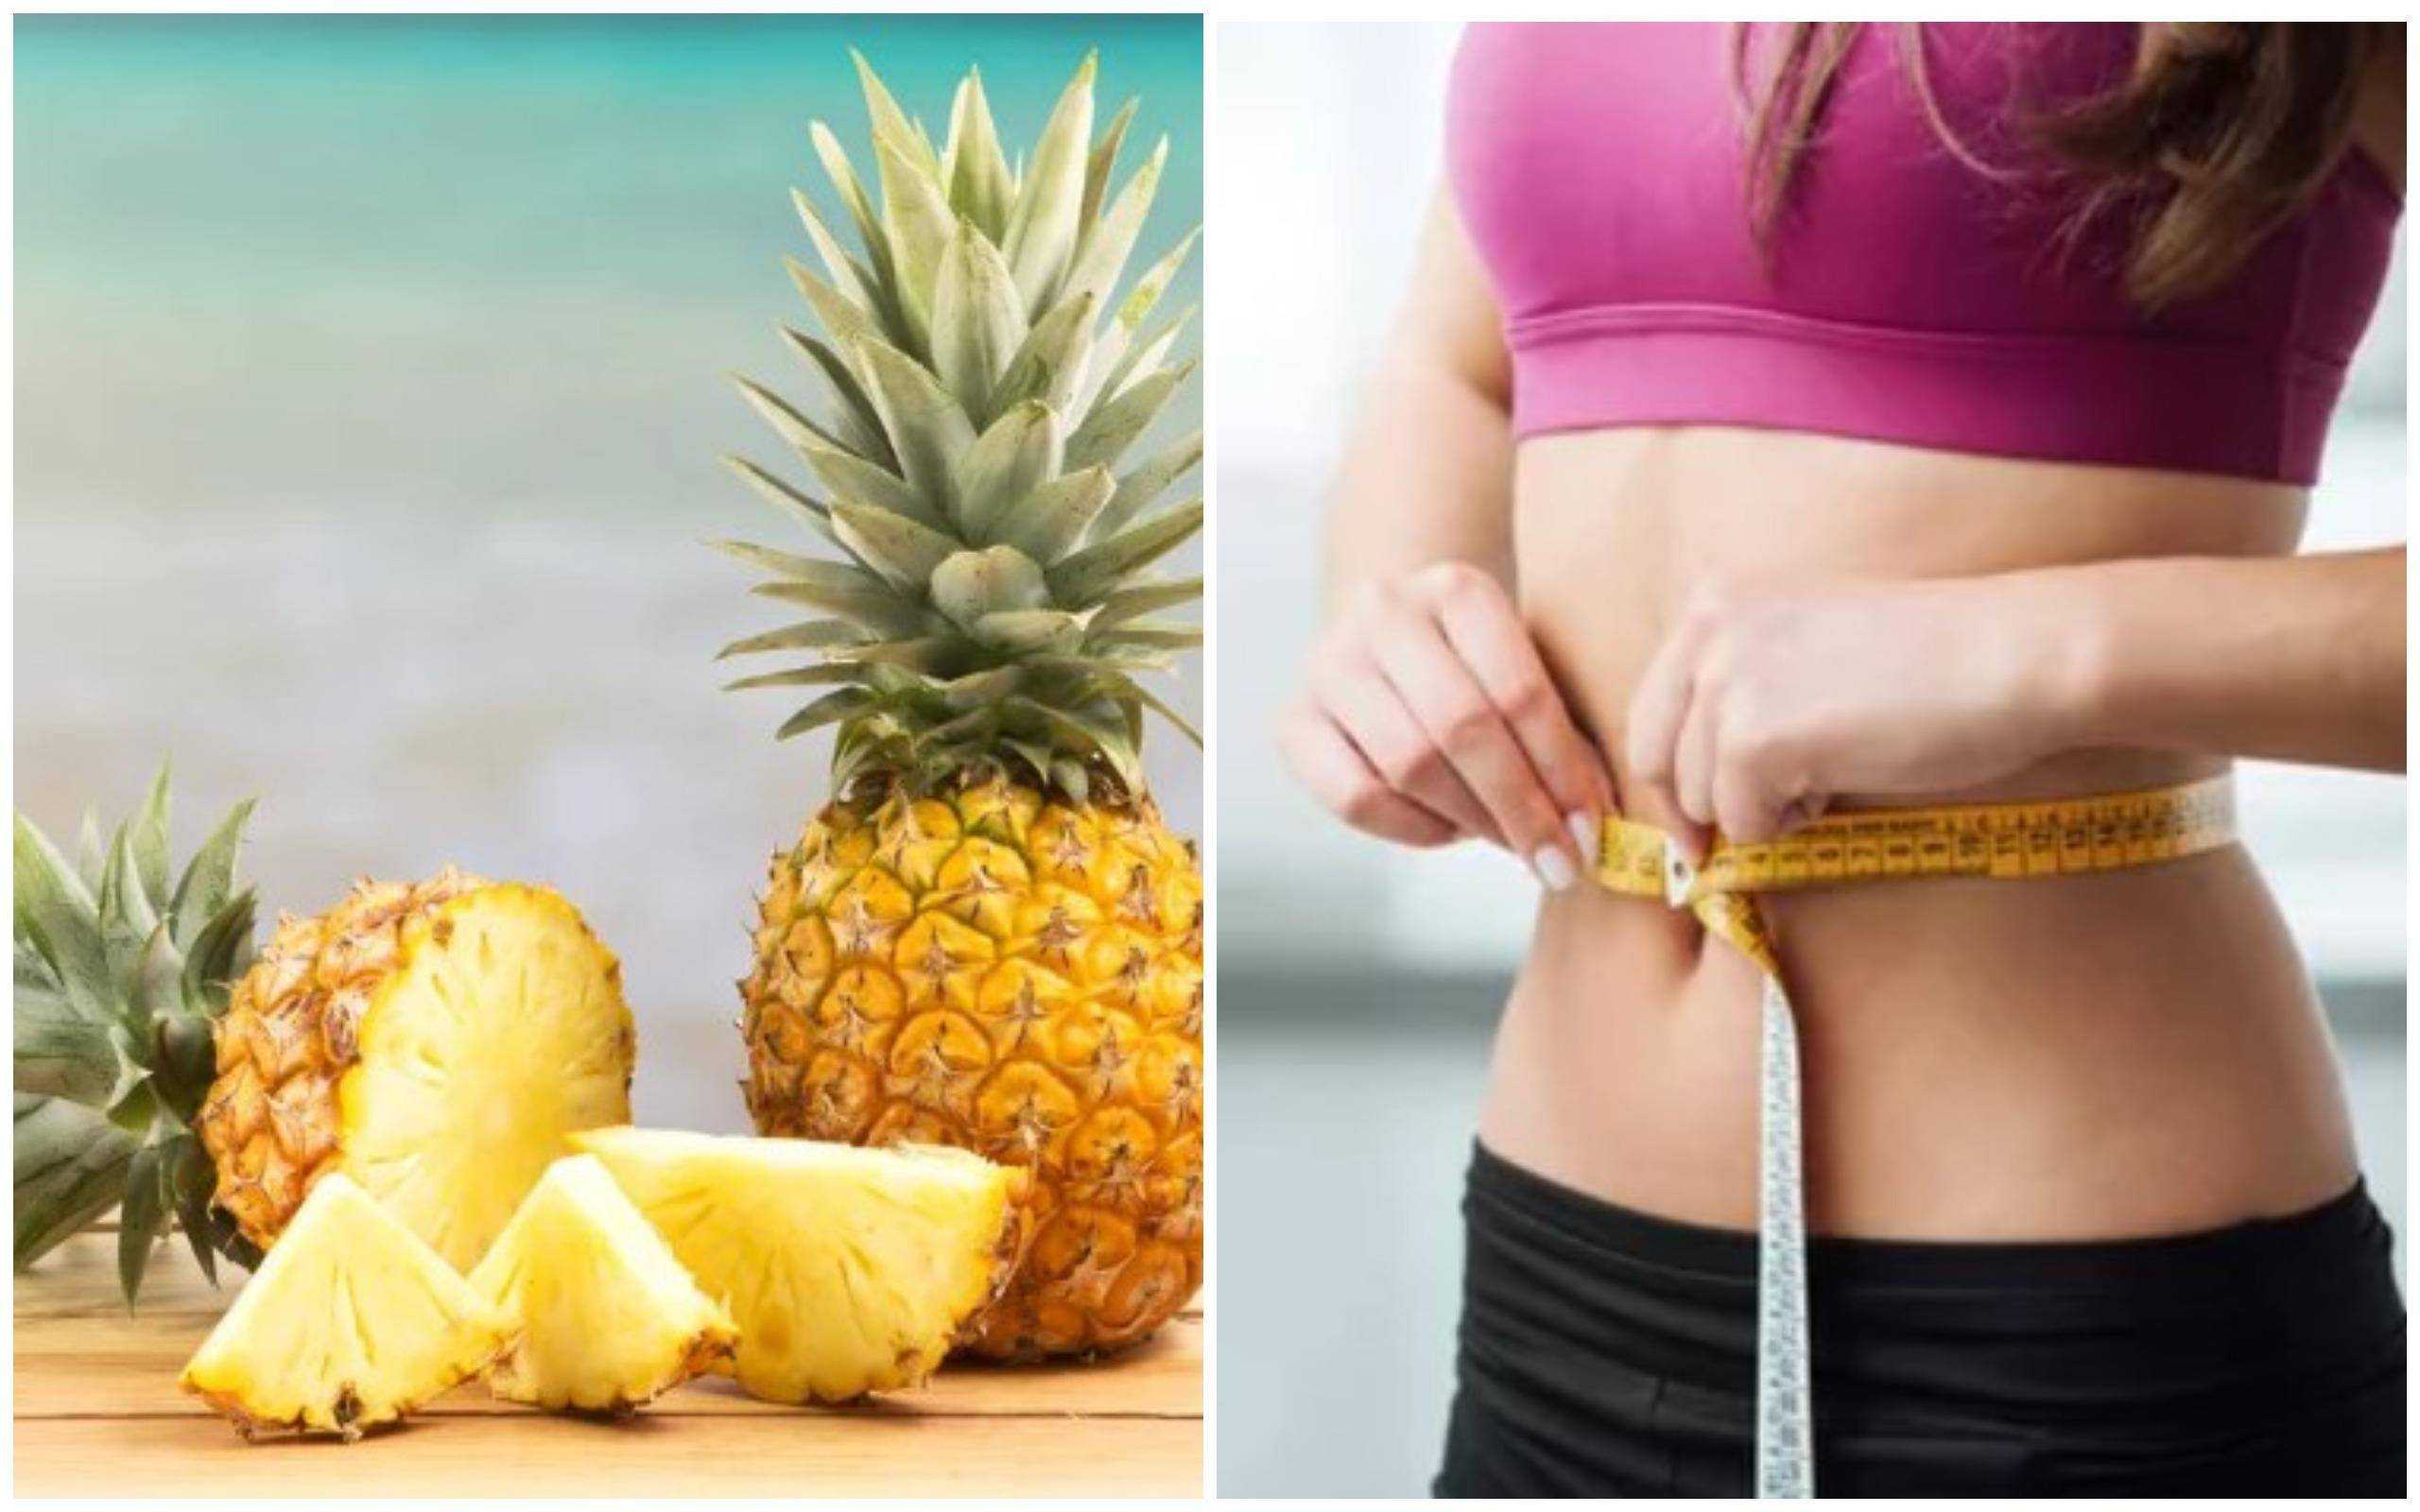 как правильно применять ананас для похудения в домашних условиях Польза и вред, диеты, рецепты Отзывы худеющих и врачей